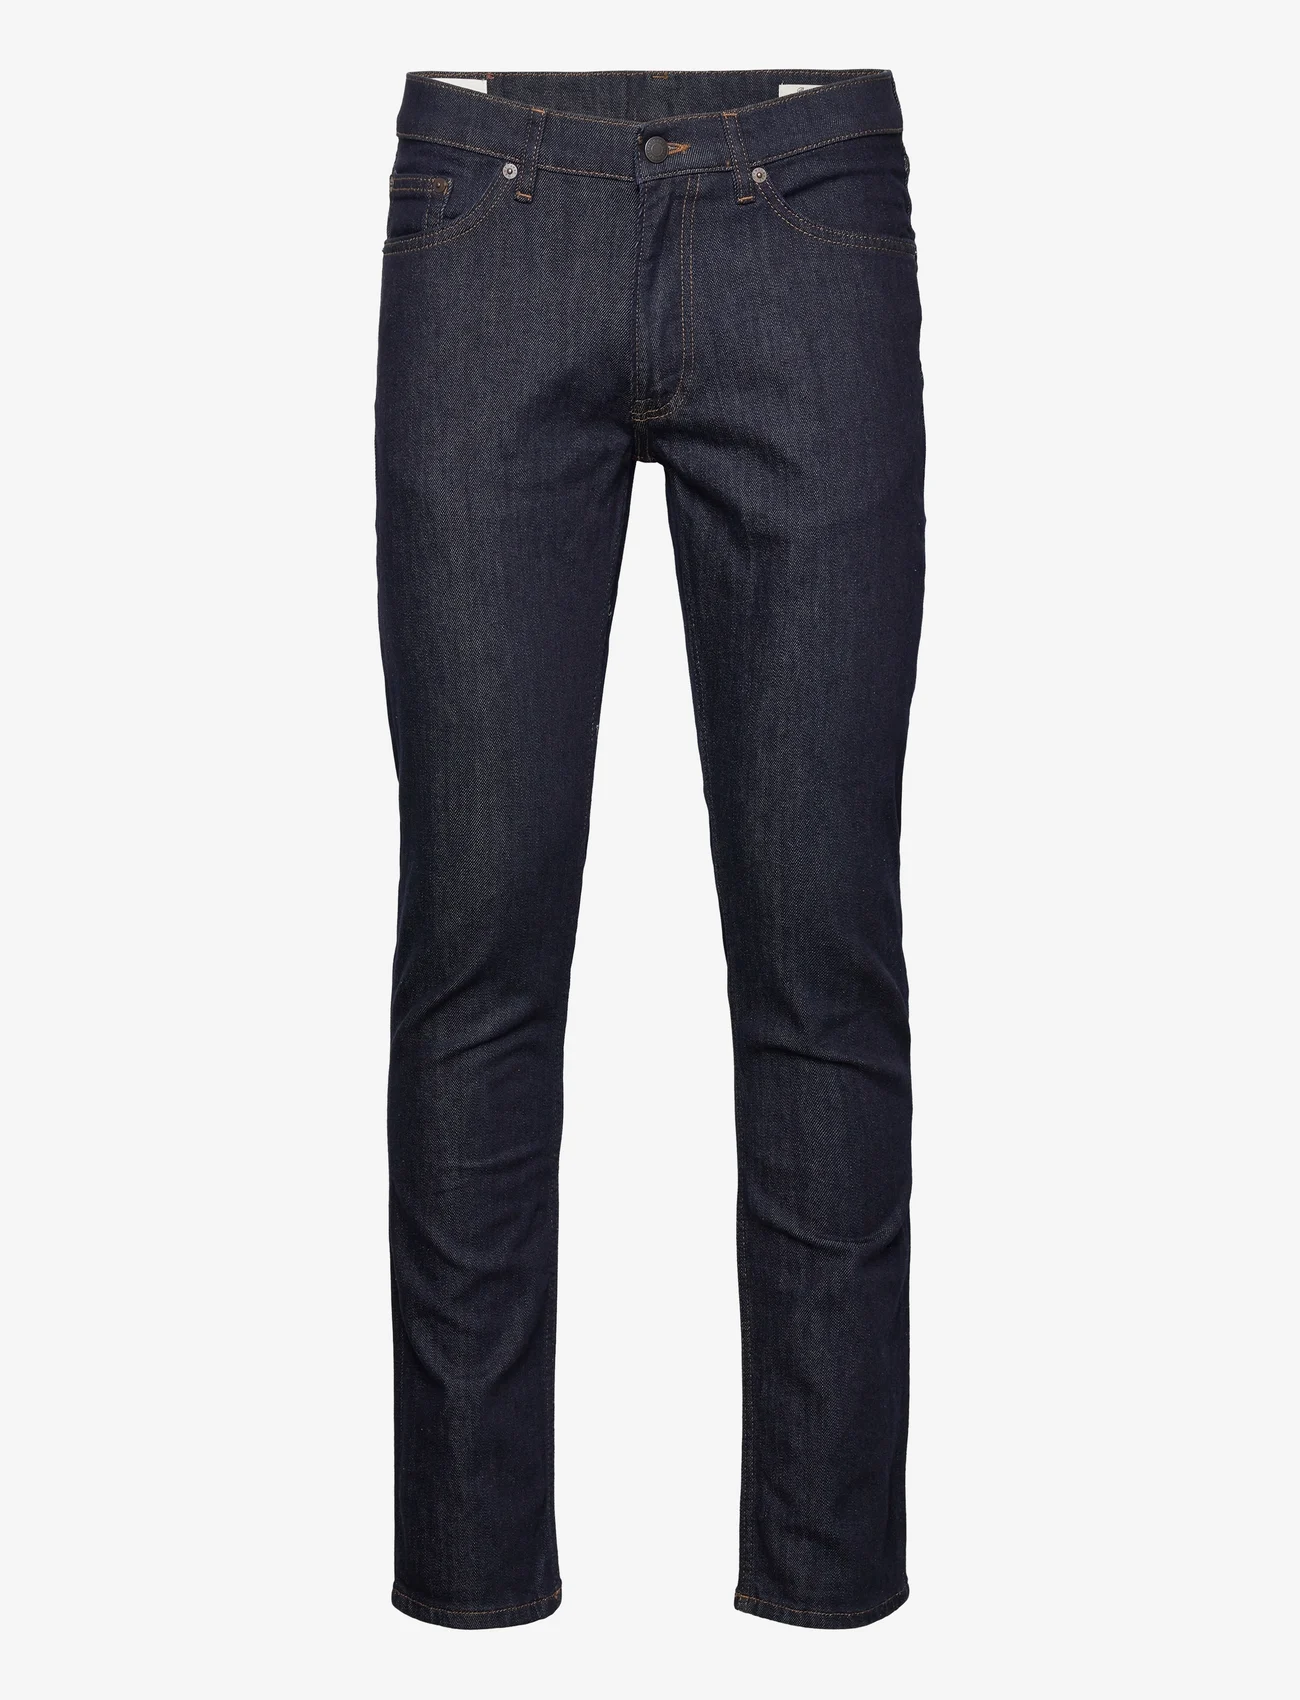 GANT - SLIM GANT JEANS - slim jeans - dark blue - 1